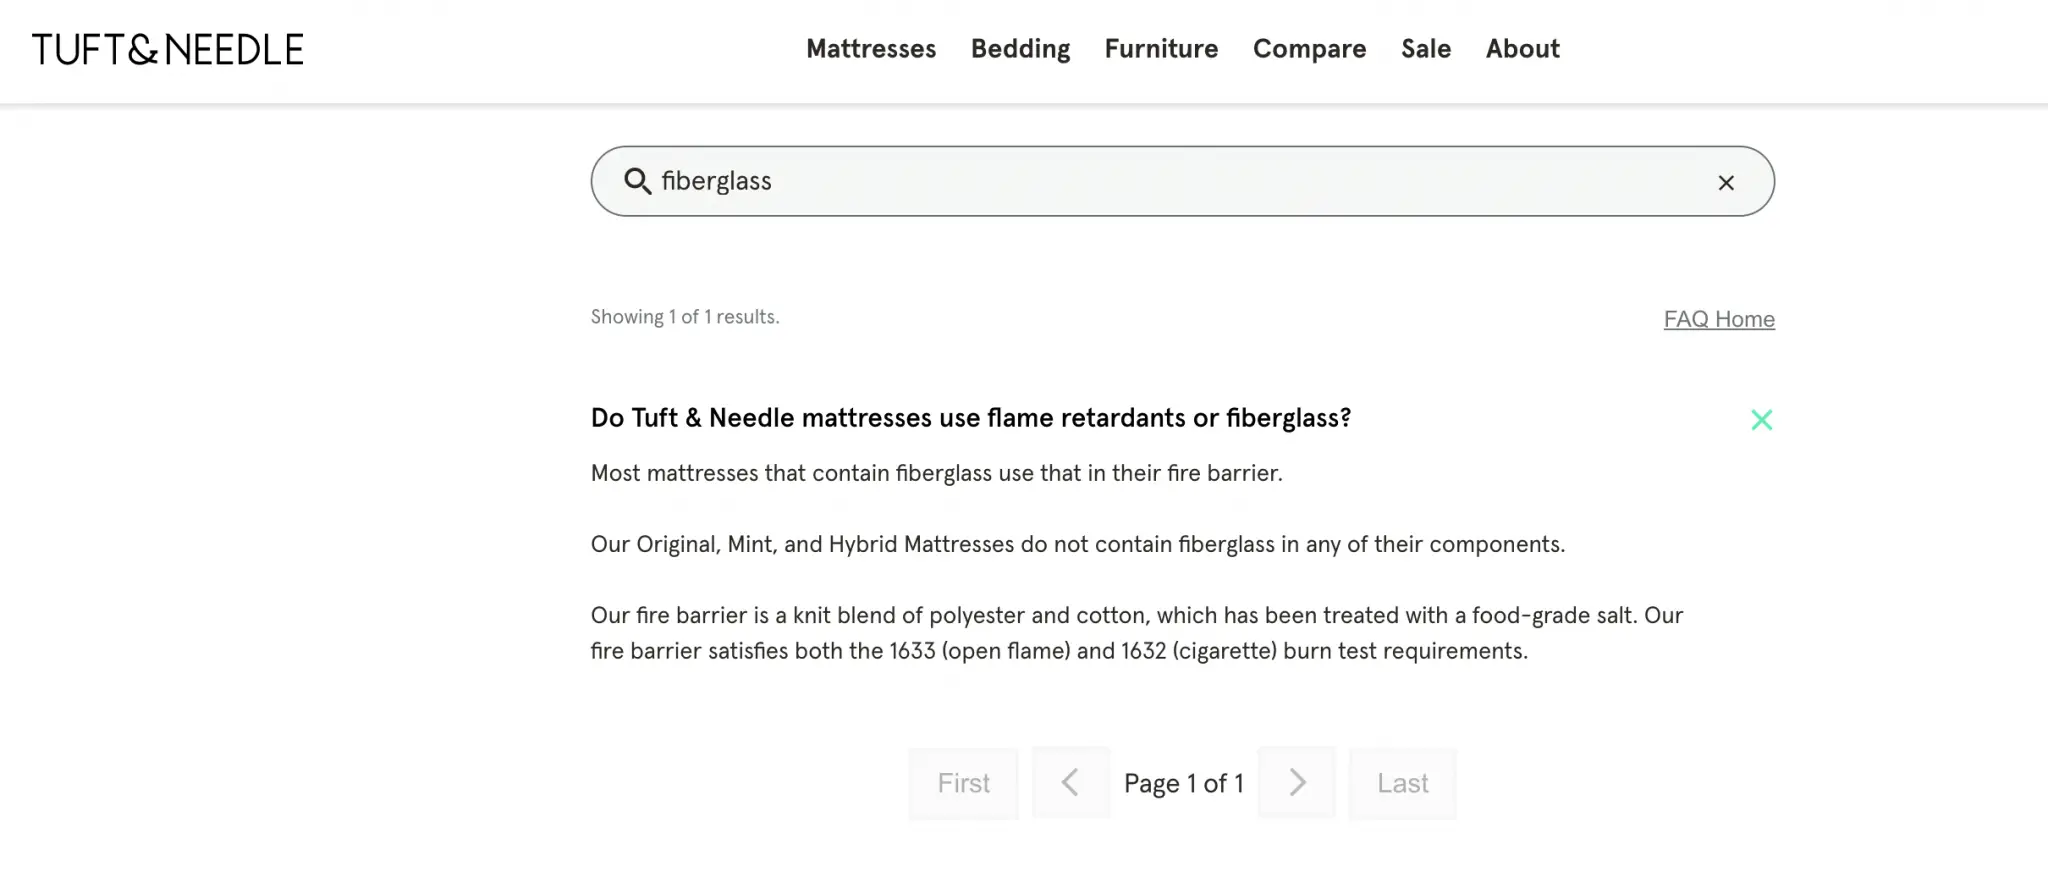 hybrid mattresses that do not contain fiberglass